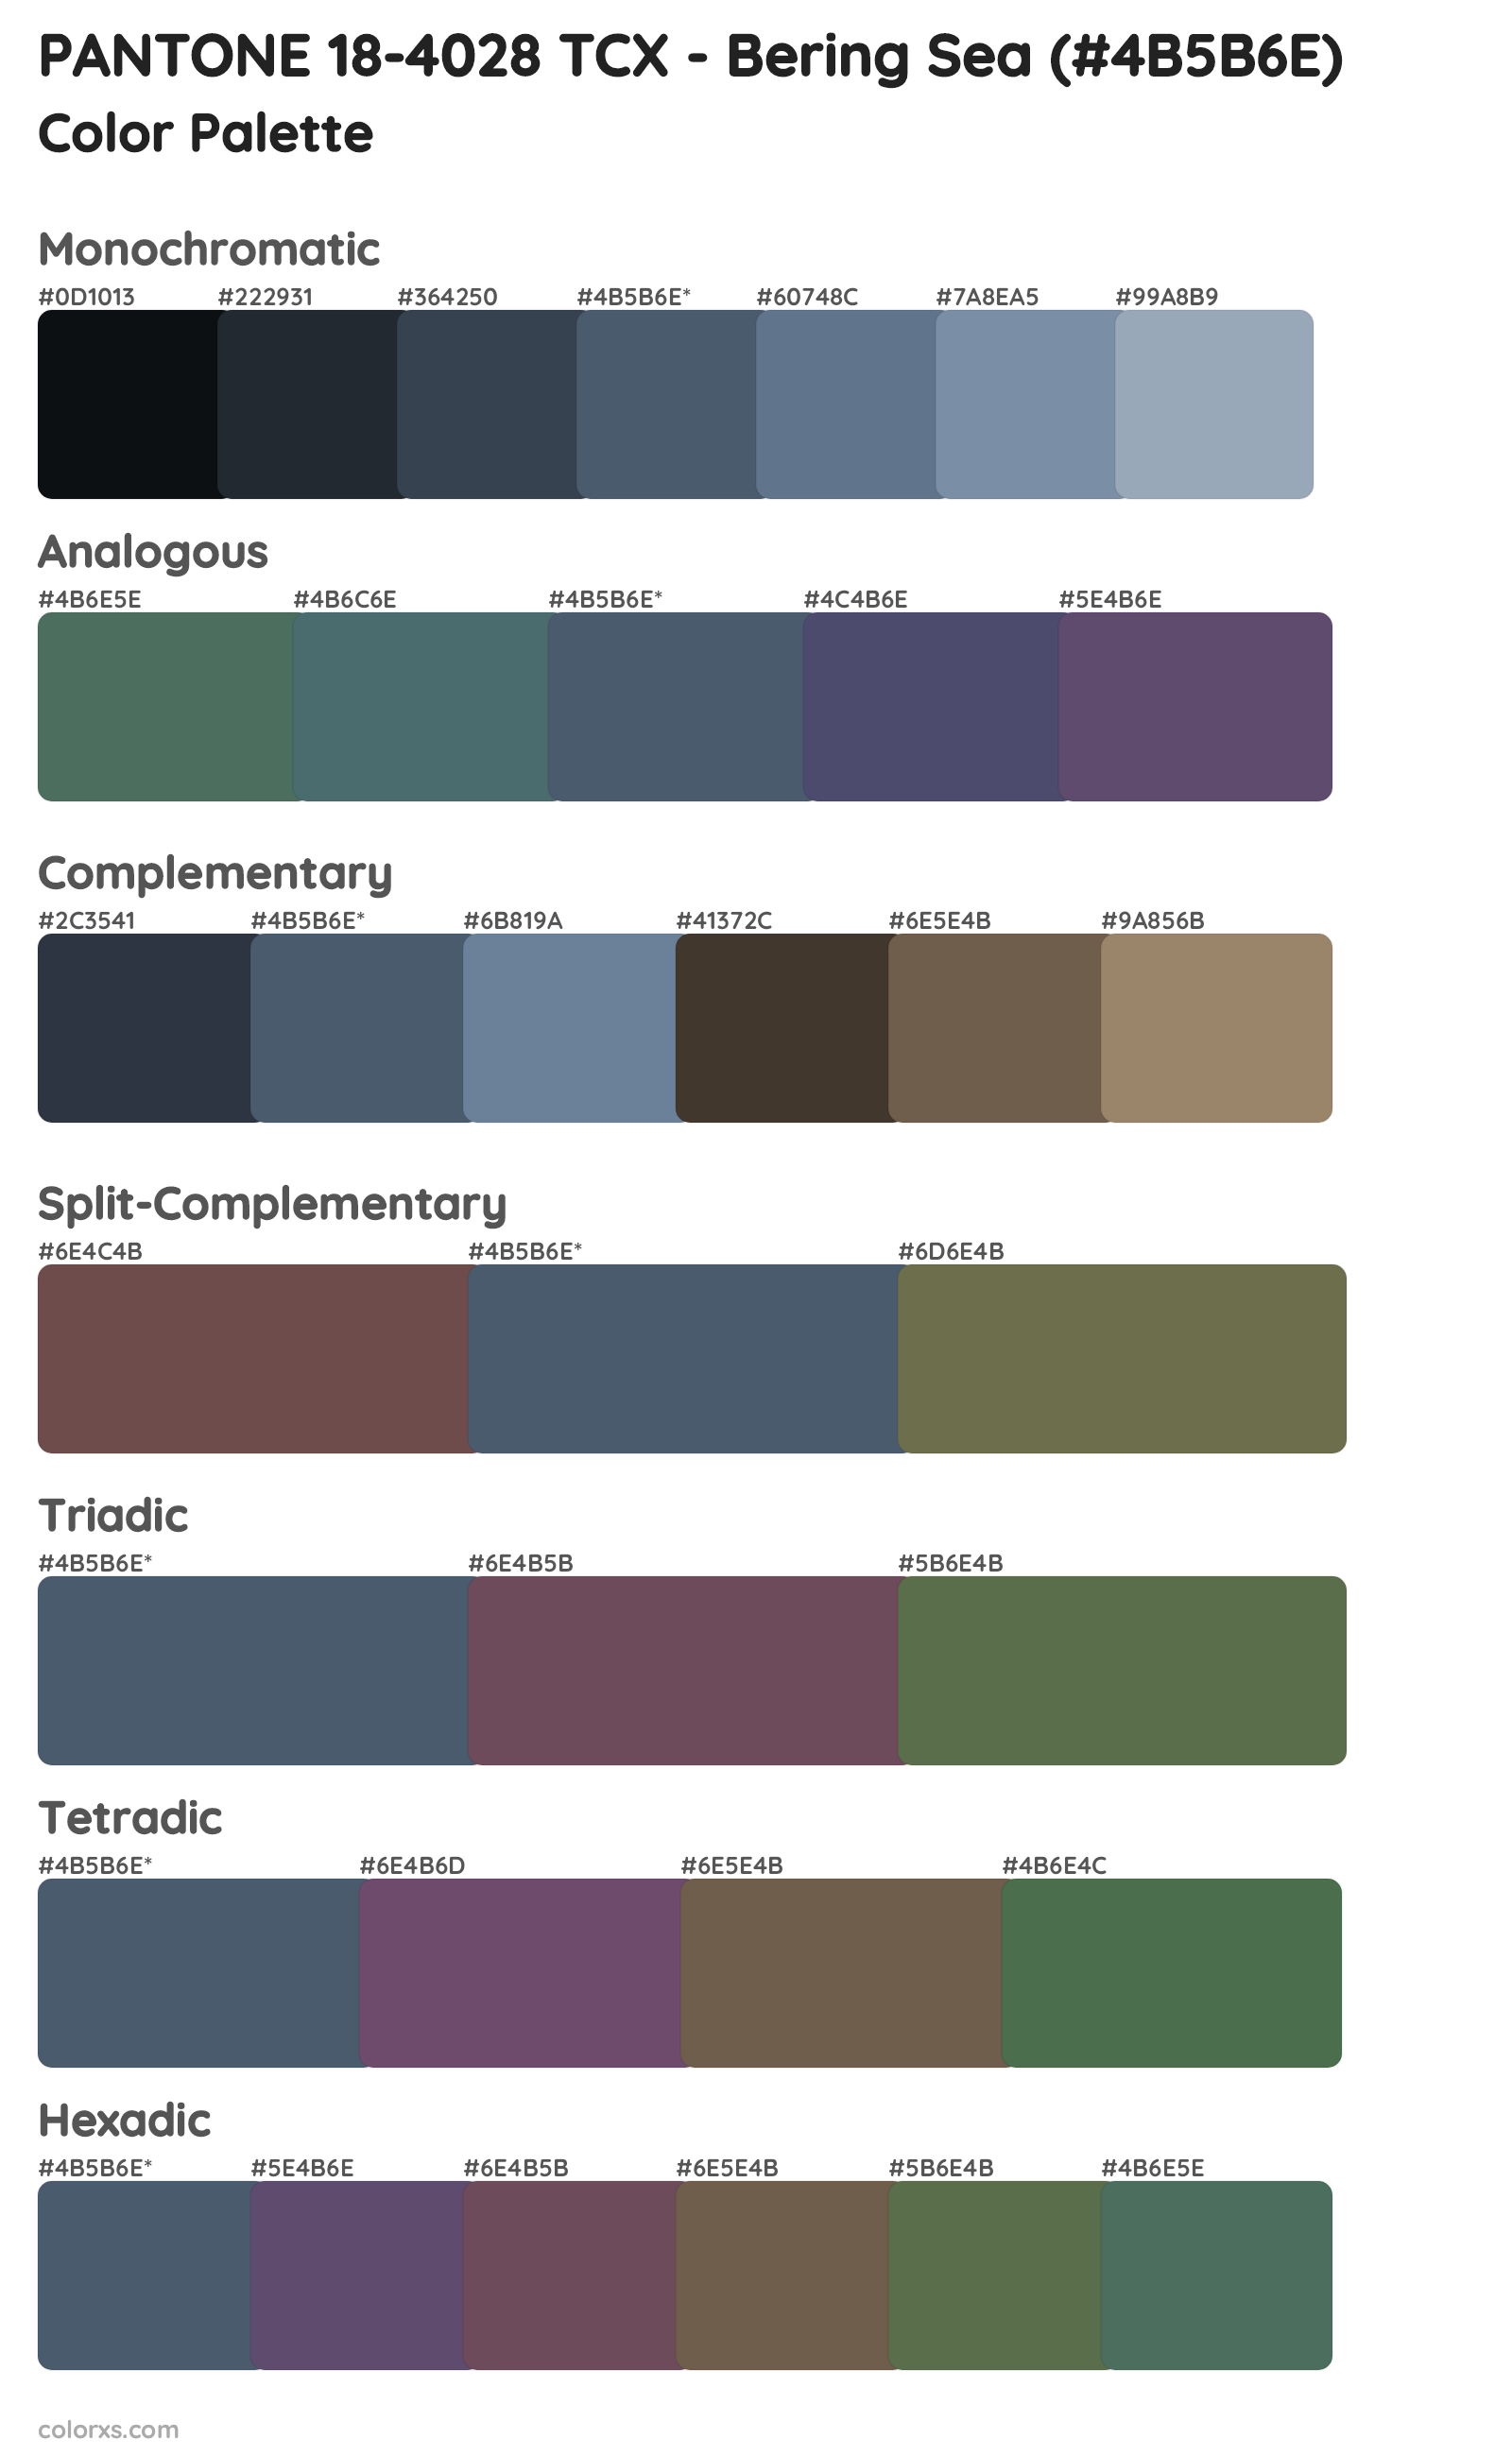 PANTONE 18-4028 TCX - Bering Sea Color Scheme Palettes